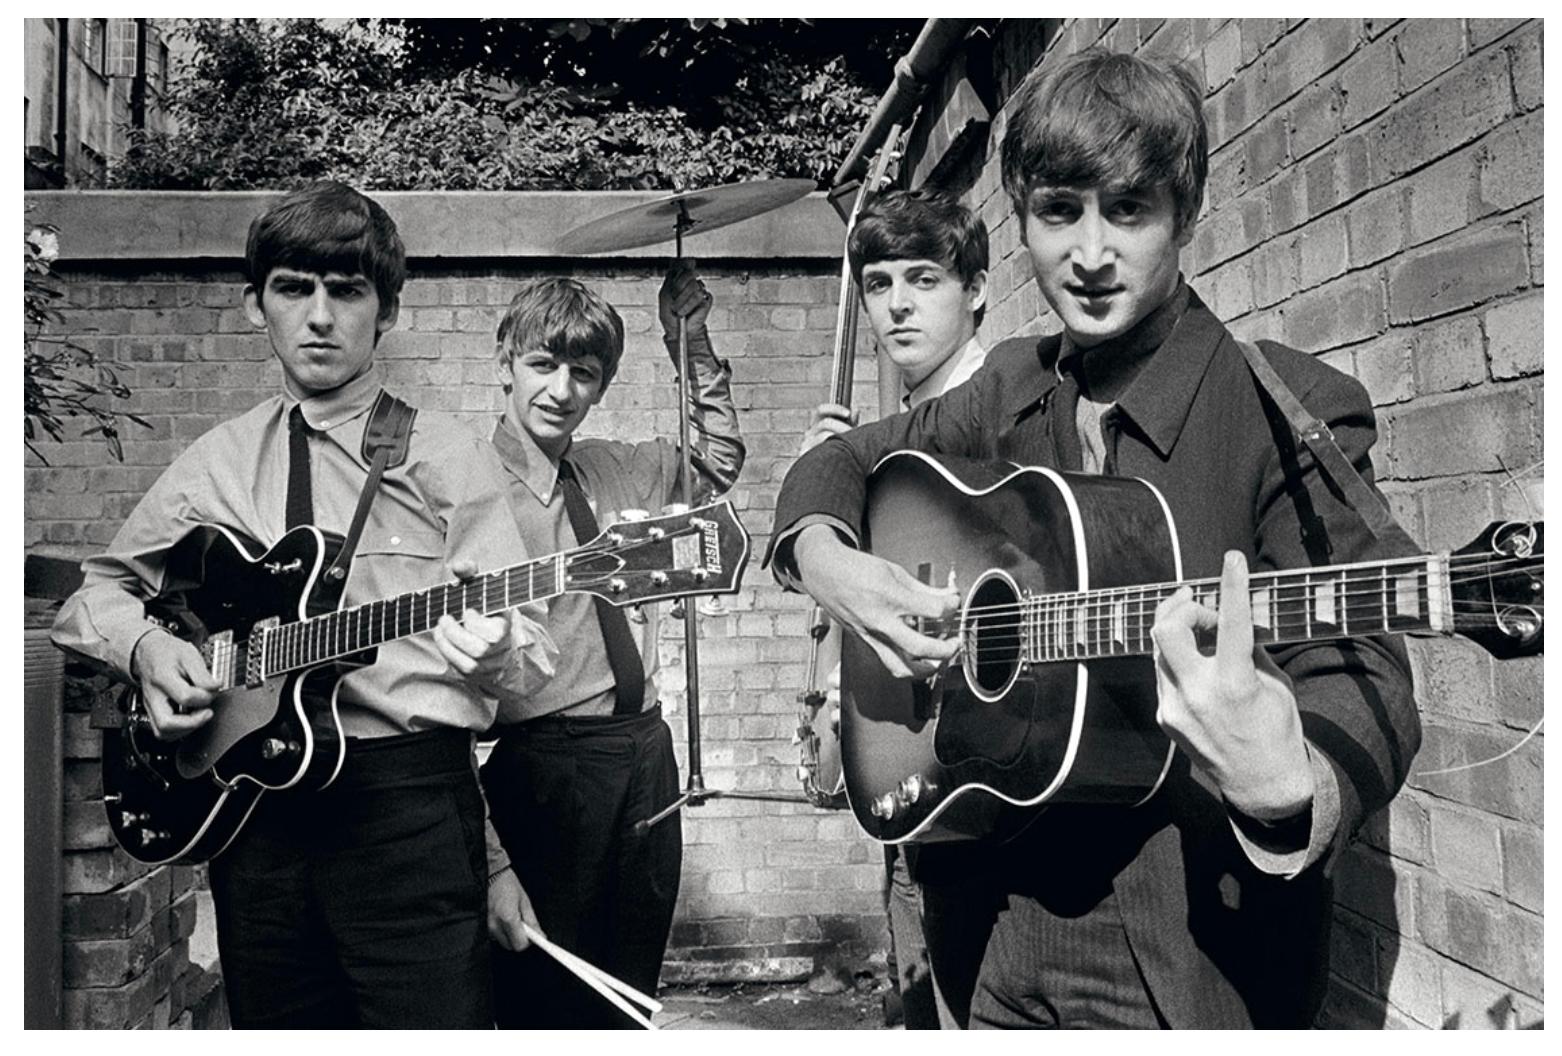 Die Beatles 1963 Abbey Road Studios London England.

Das erste große Gruppenporträt der Beatles wurde von Terry O'Neill während der Aufnahmen zu ihrer ersten Hitsingle und ihrem Album "Please Please Me" im Hinterhof der Abbey Road Studios in London